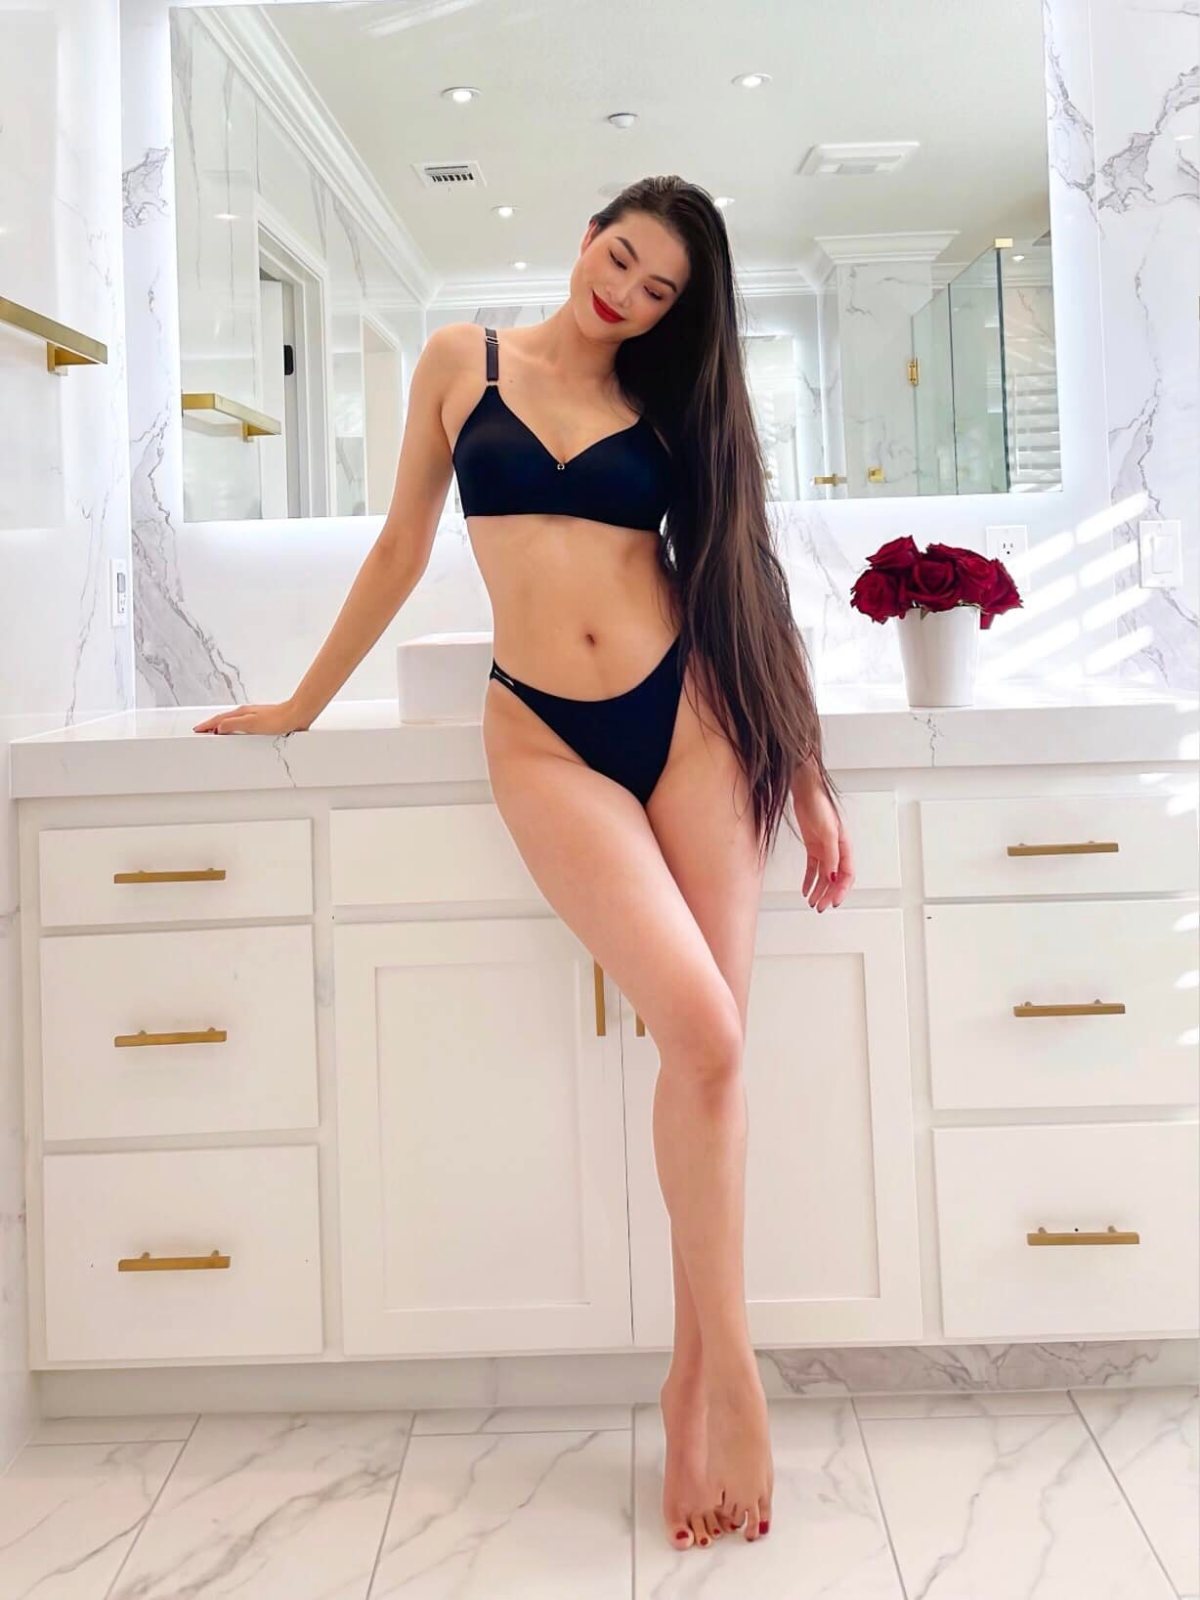 Ngắm hình Phạm Hương mặc bikini dáng đẹp nhất